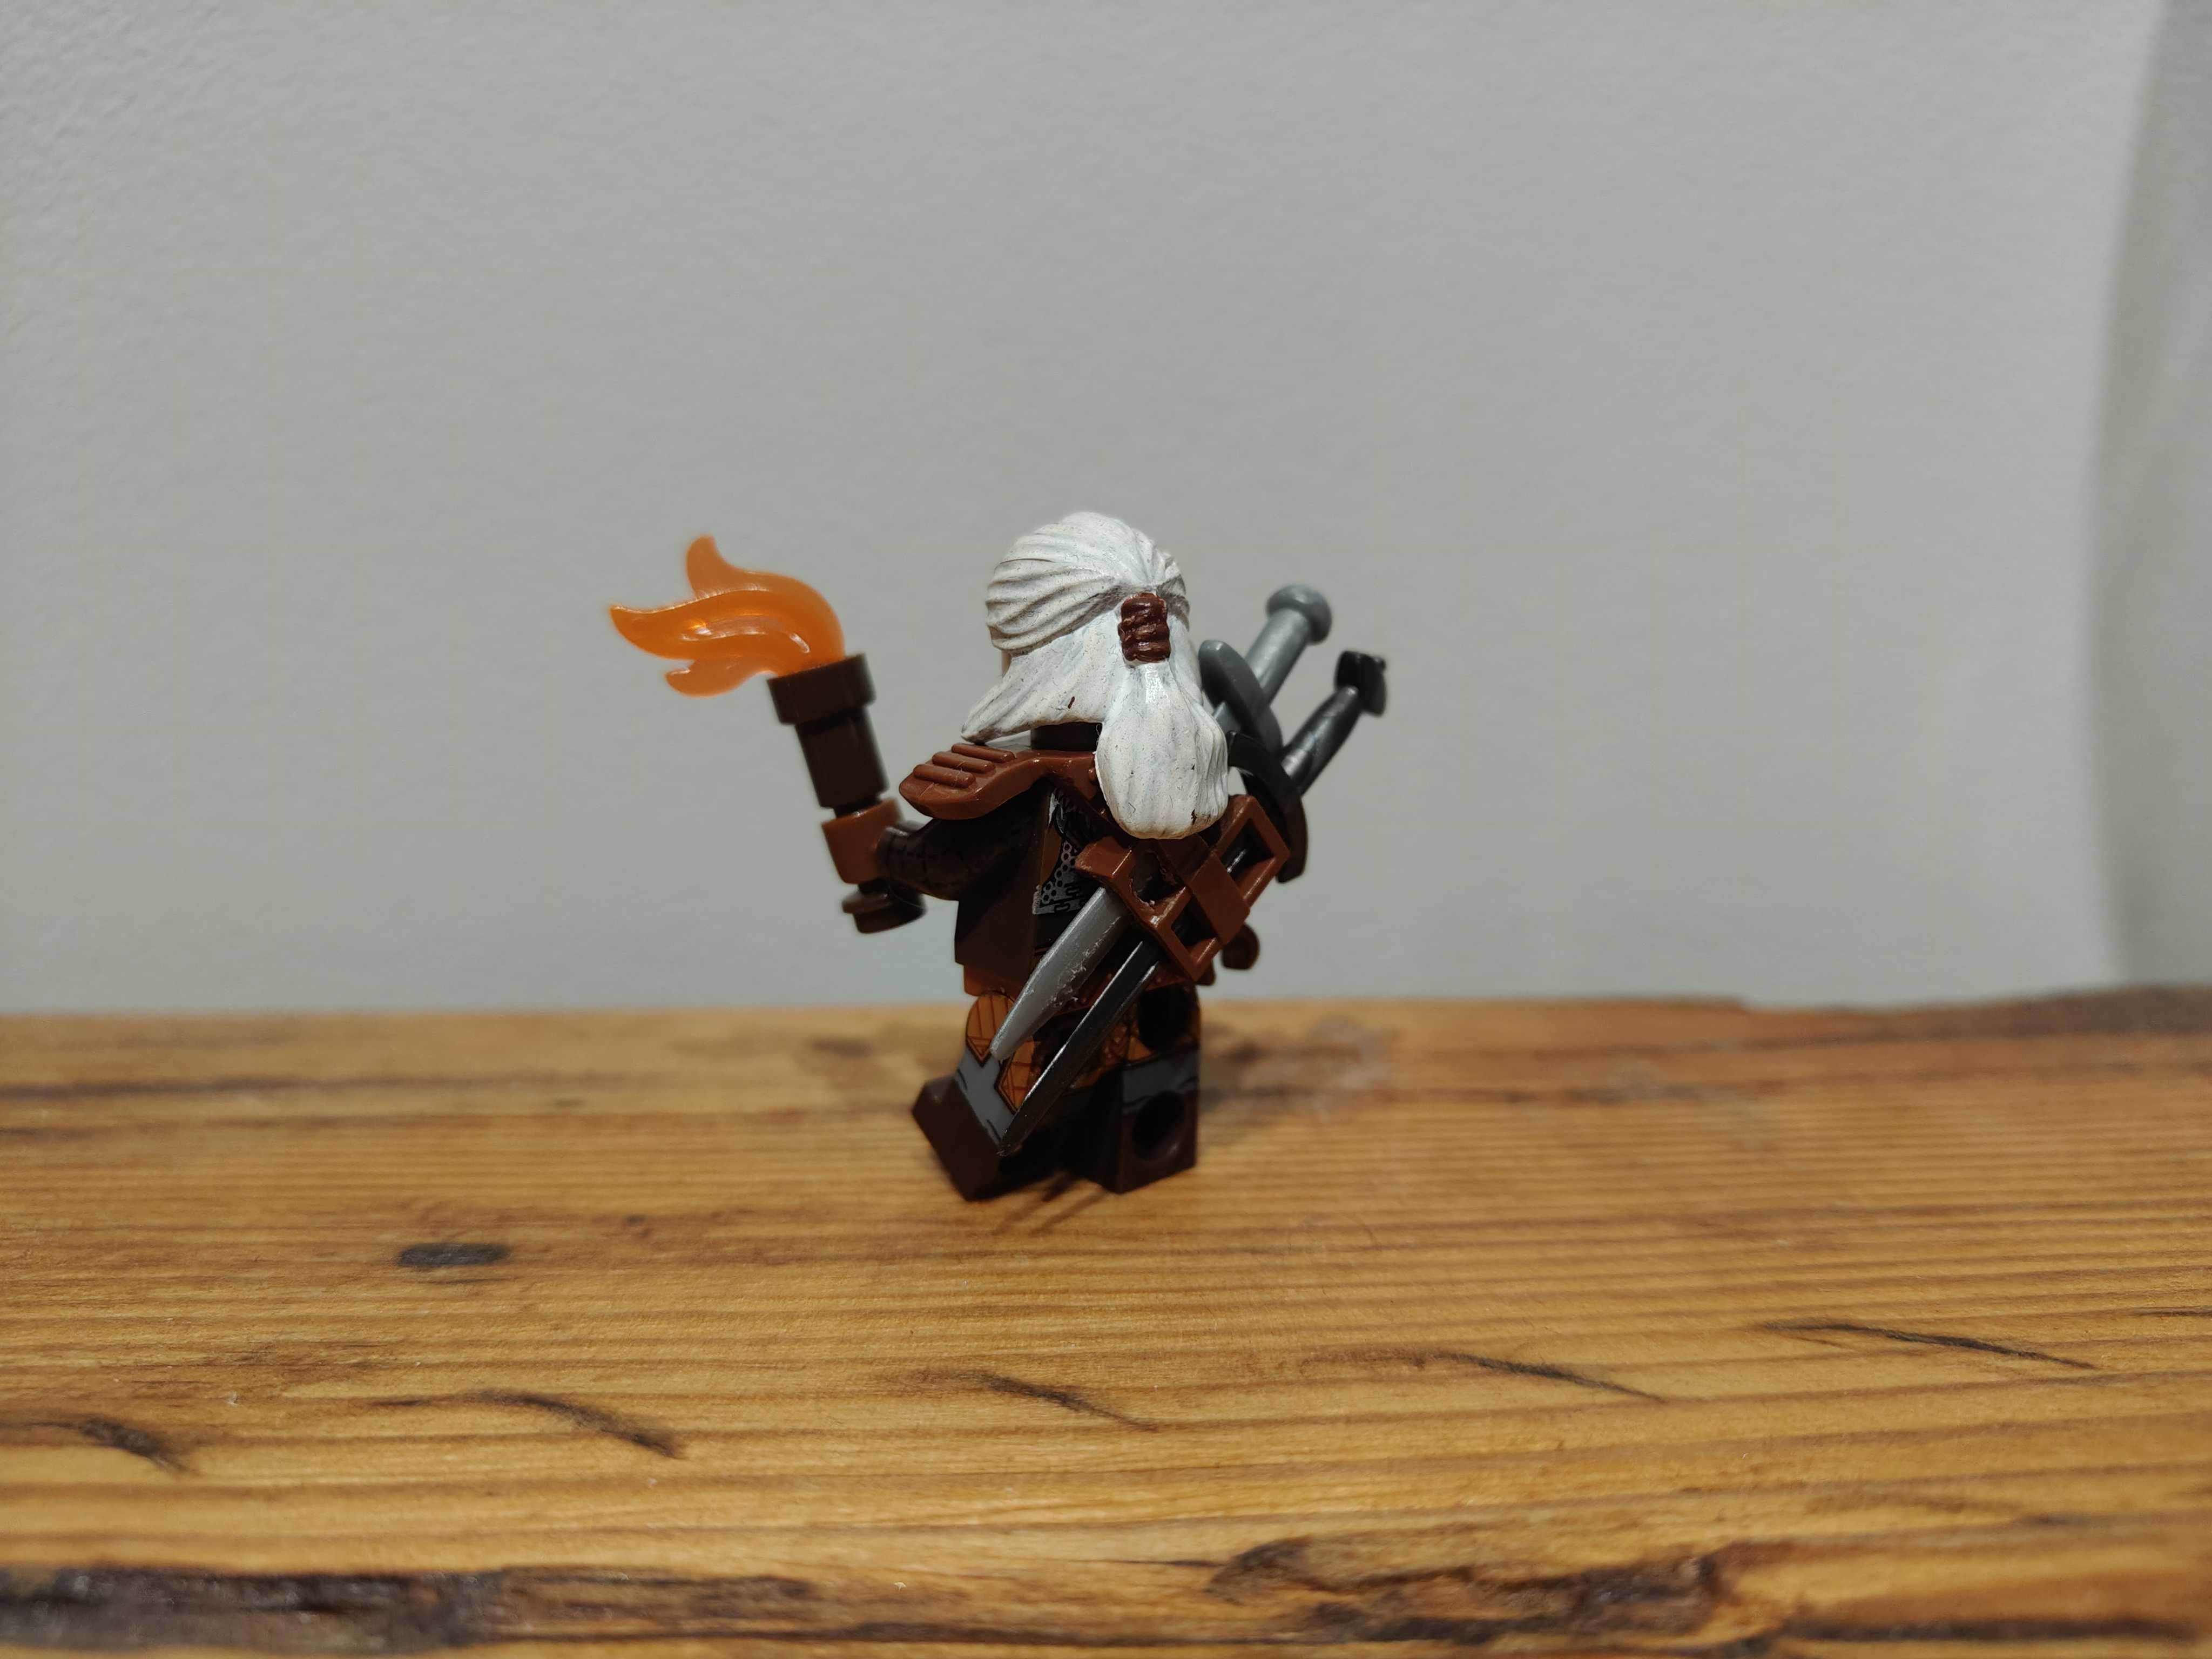 Wiedźmin figurka minifigurka (nie Lego) Witcher postać ludziki